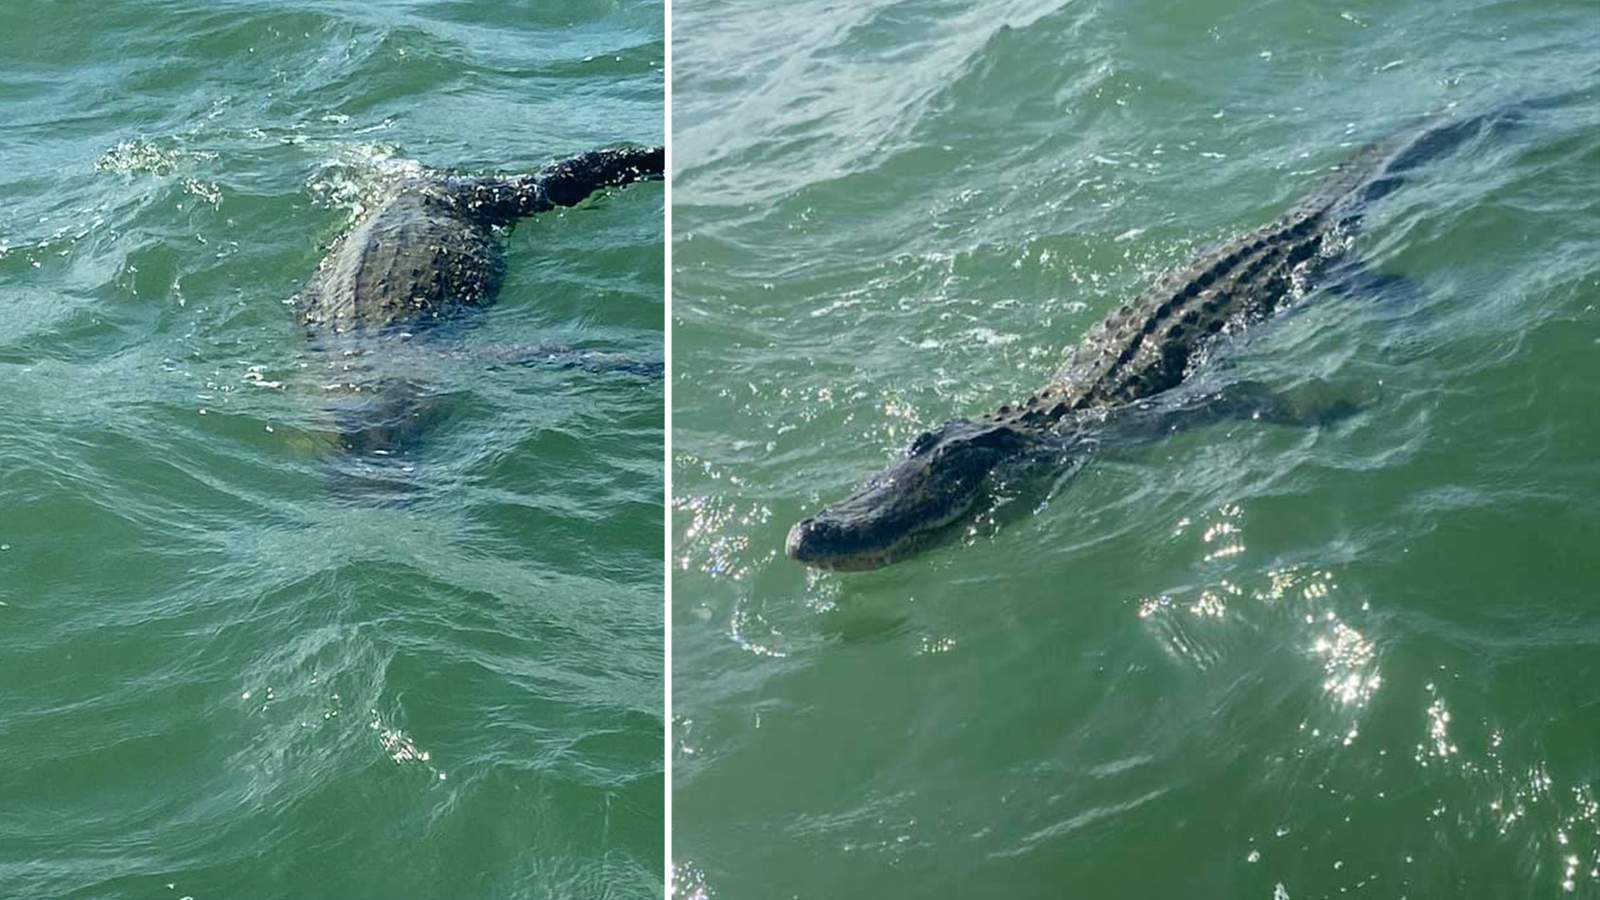 Gators in the gulf: Alligators caught on video in Galveston, Port O’Connor